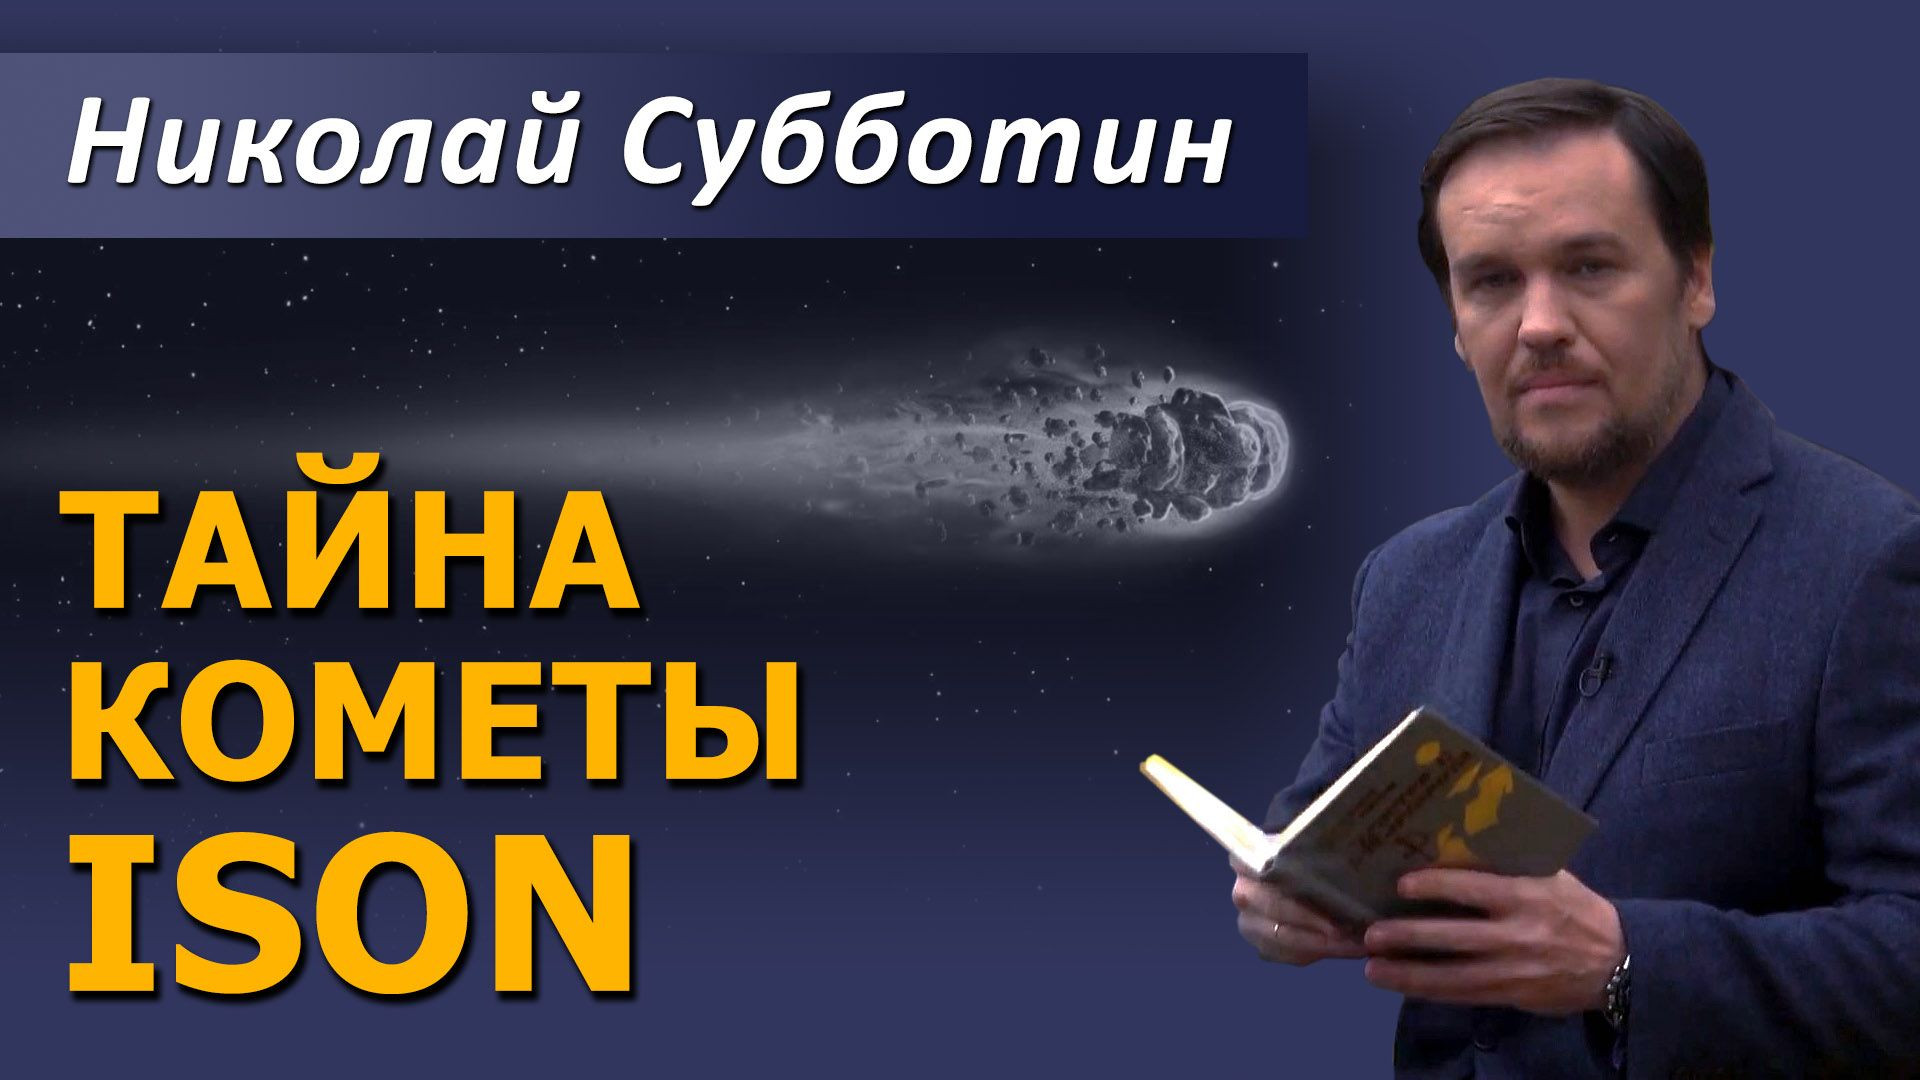 Тайны кометы ISON. Николай Субботин